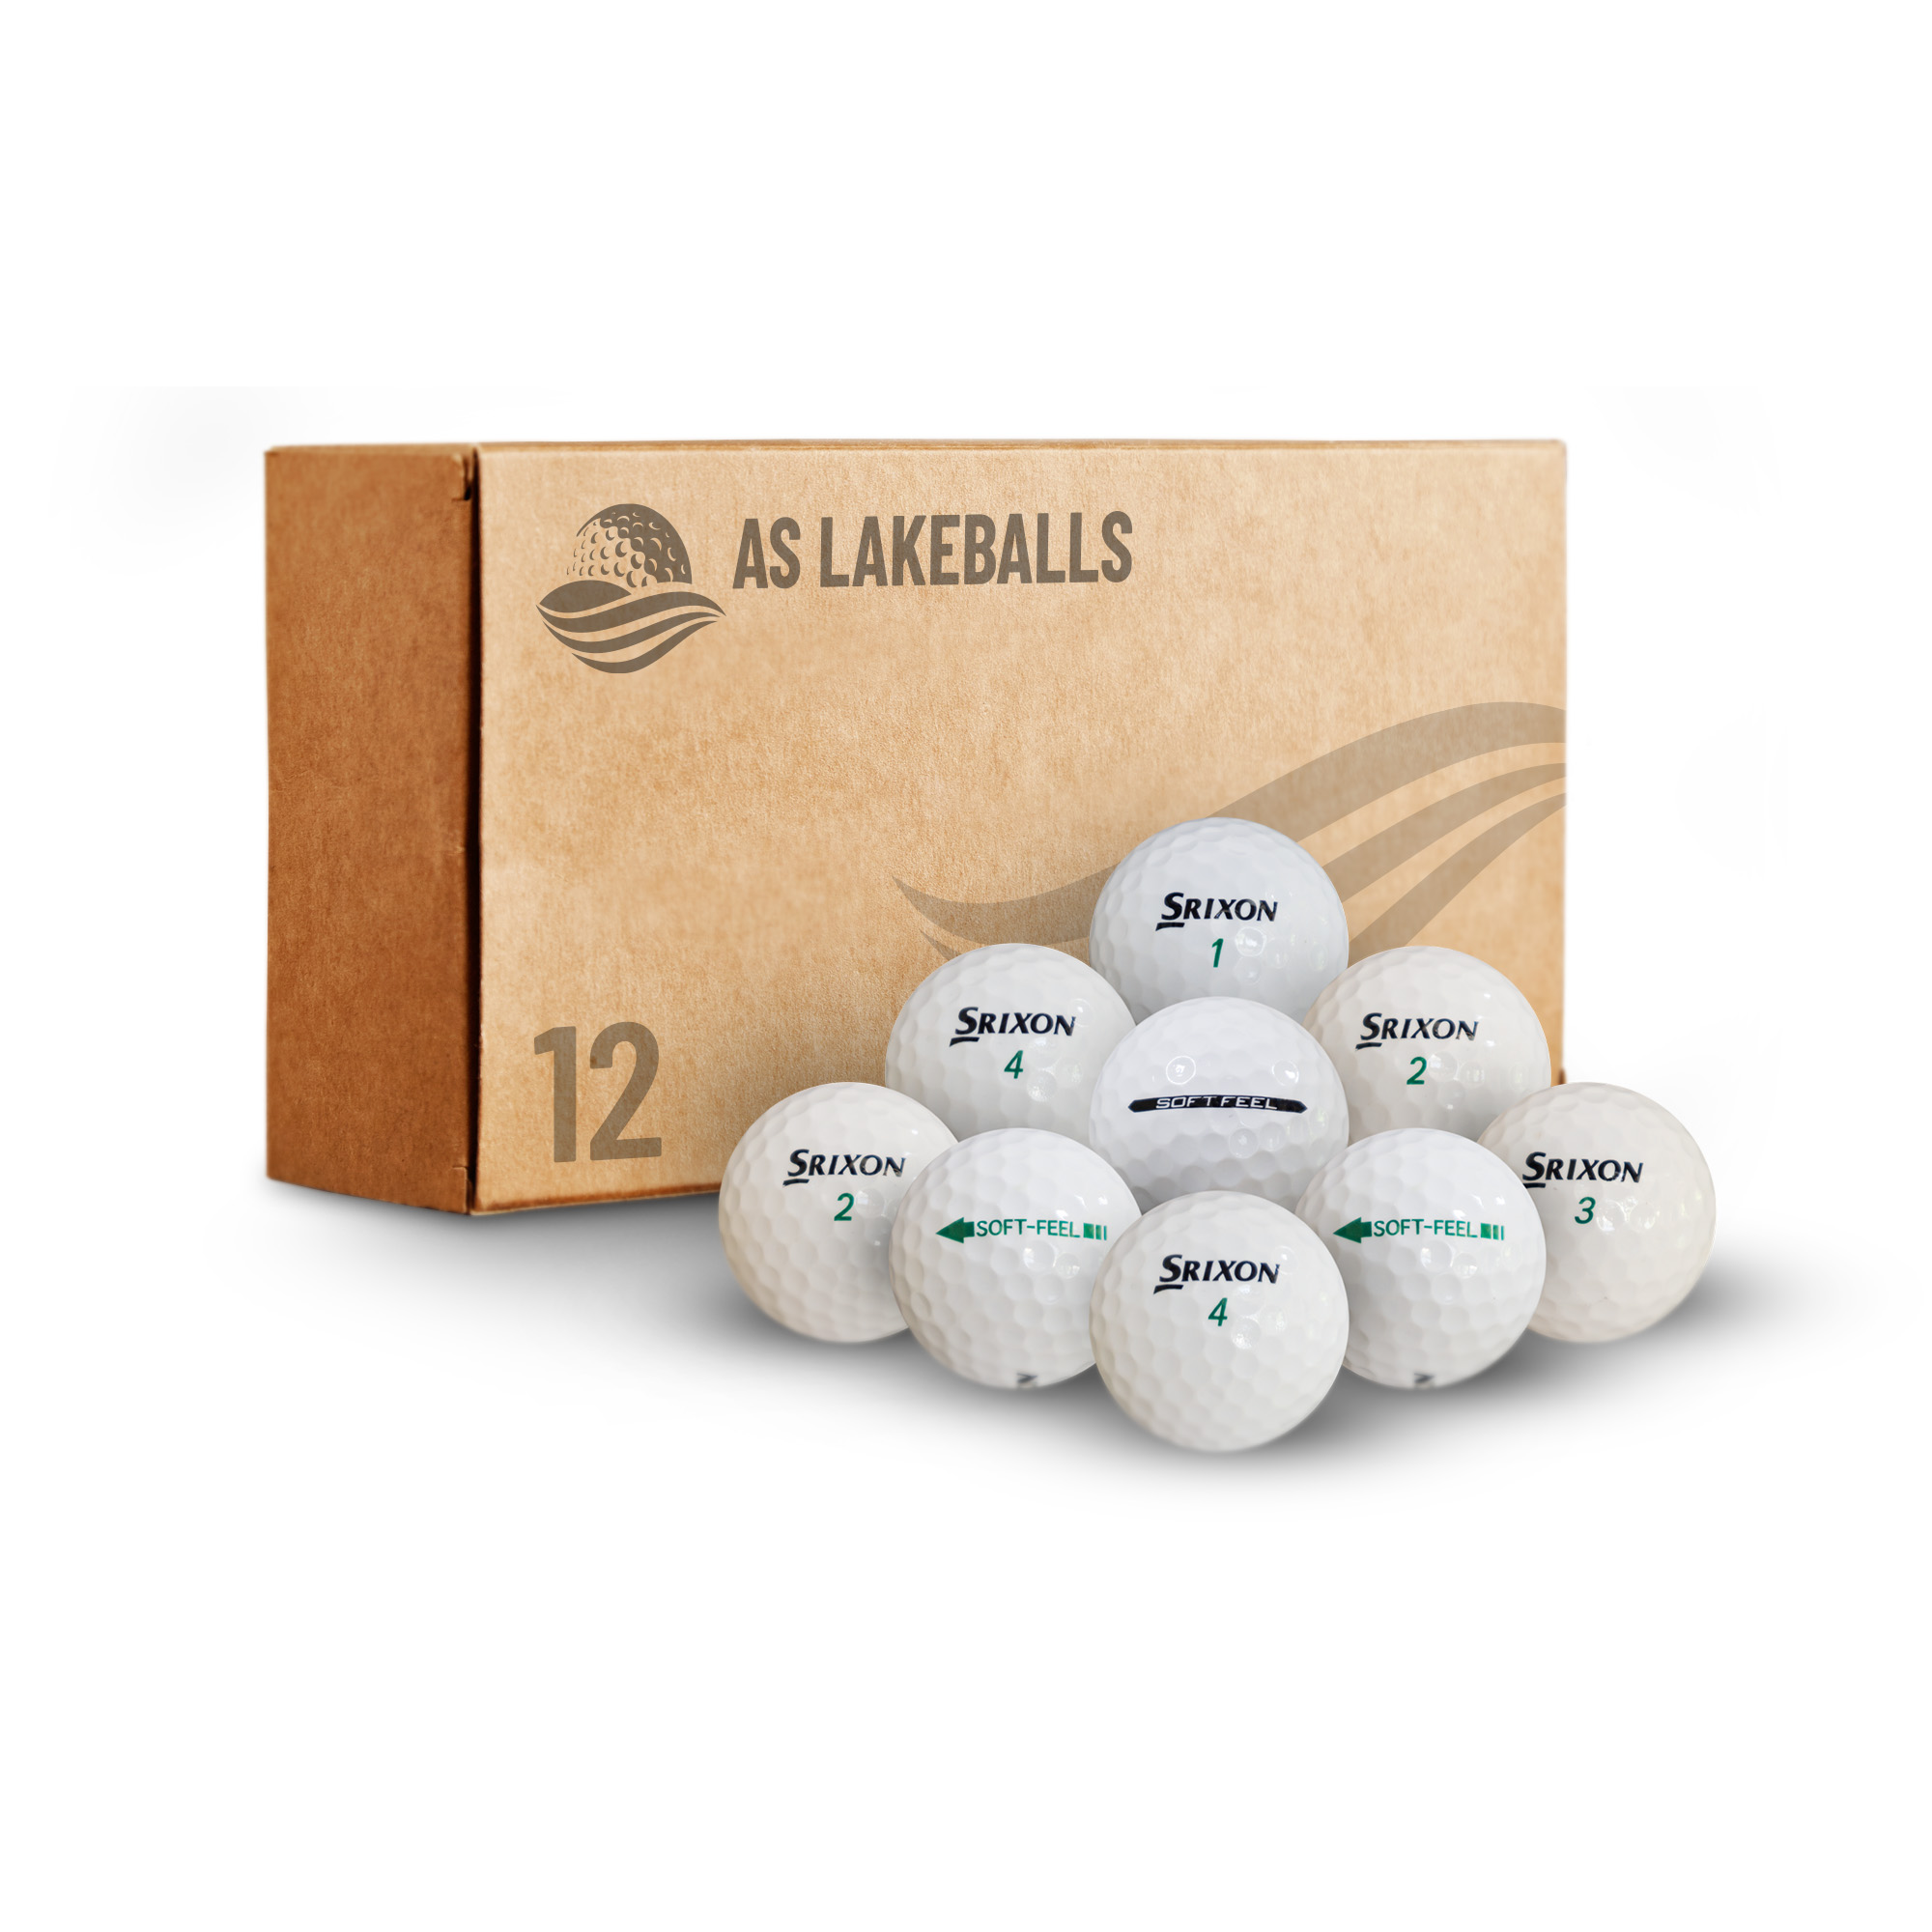 12 Stück Srixon Soft Feel AAAA Lakeballs bei AS Lakeballs günstig kaufen